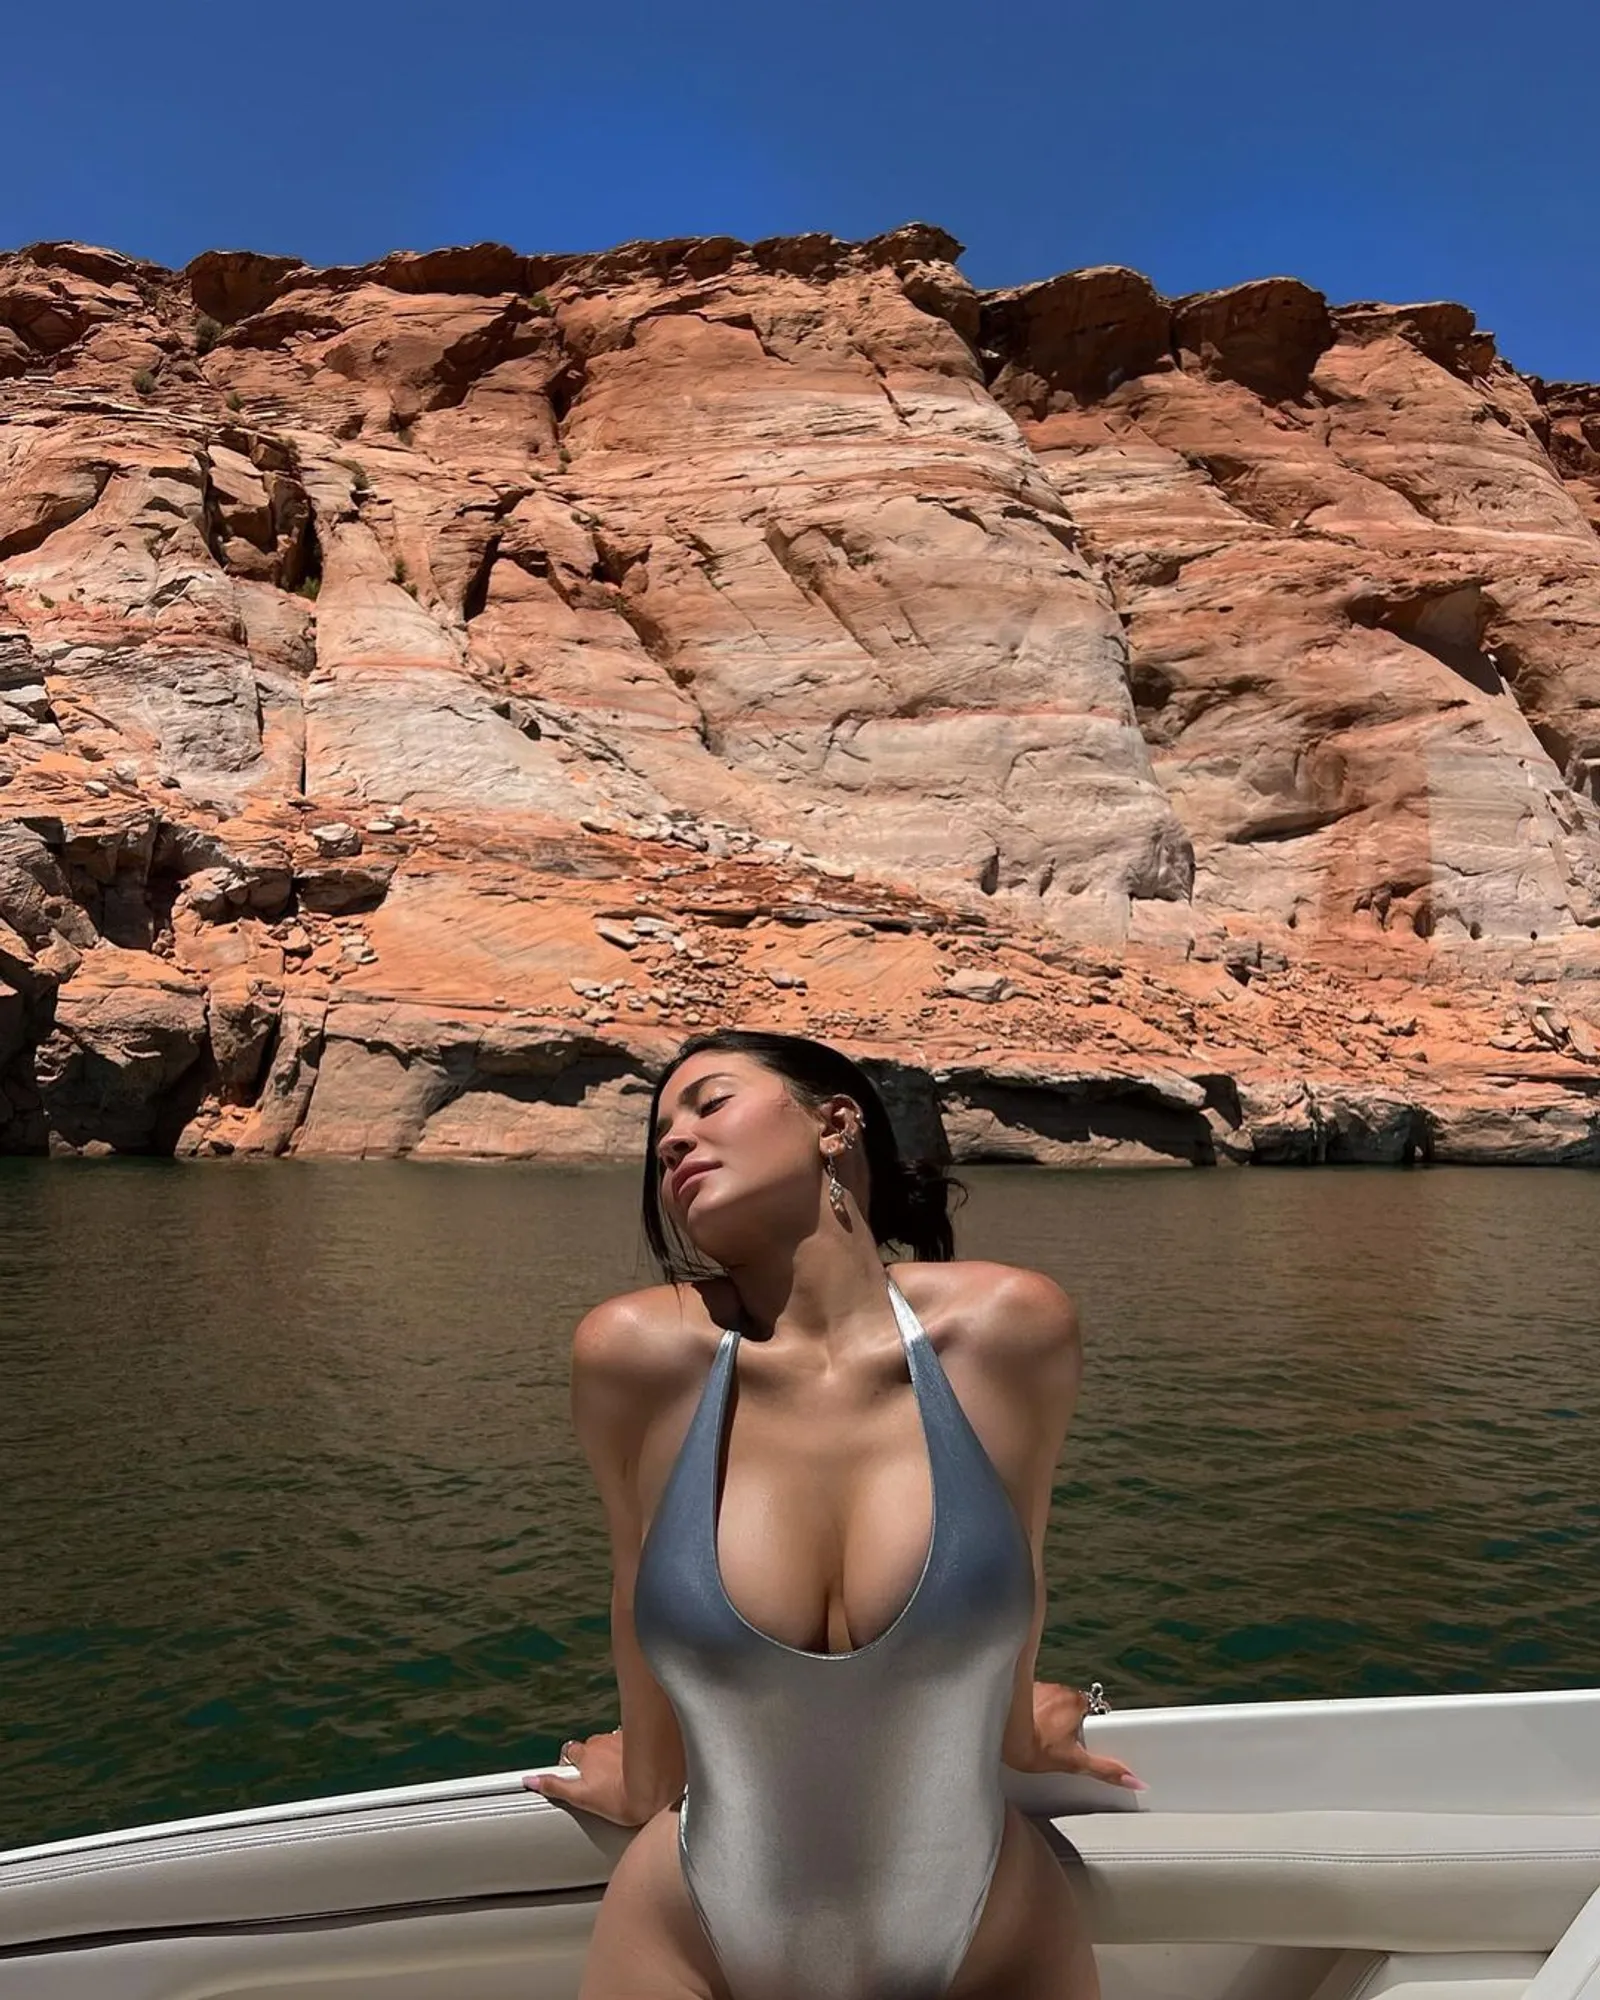 Berenang di Danau Misterius, Ada yang 'Nampak' di Kylie Jenner